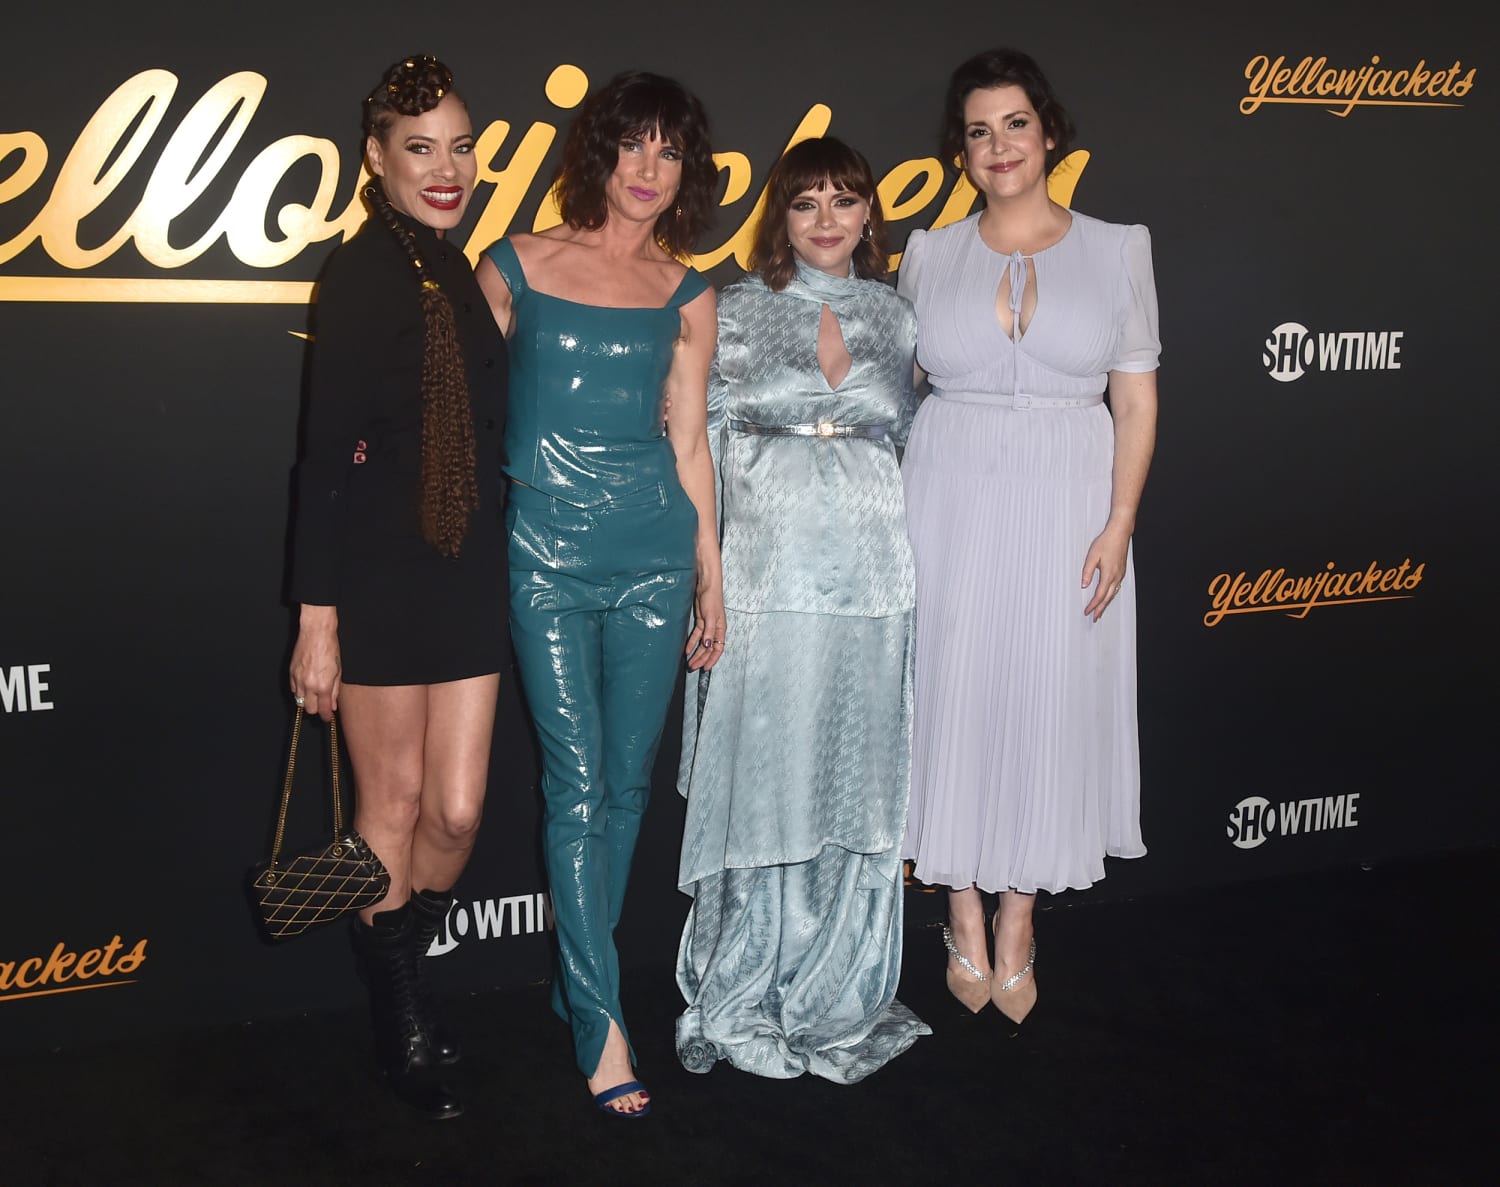 Yellowjackets' star Melanie Lynskey reveals she was body-shamed on set